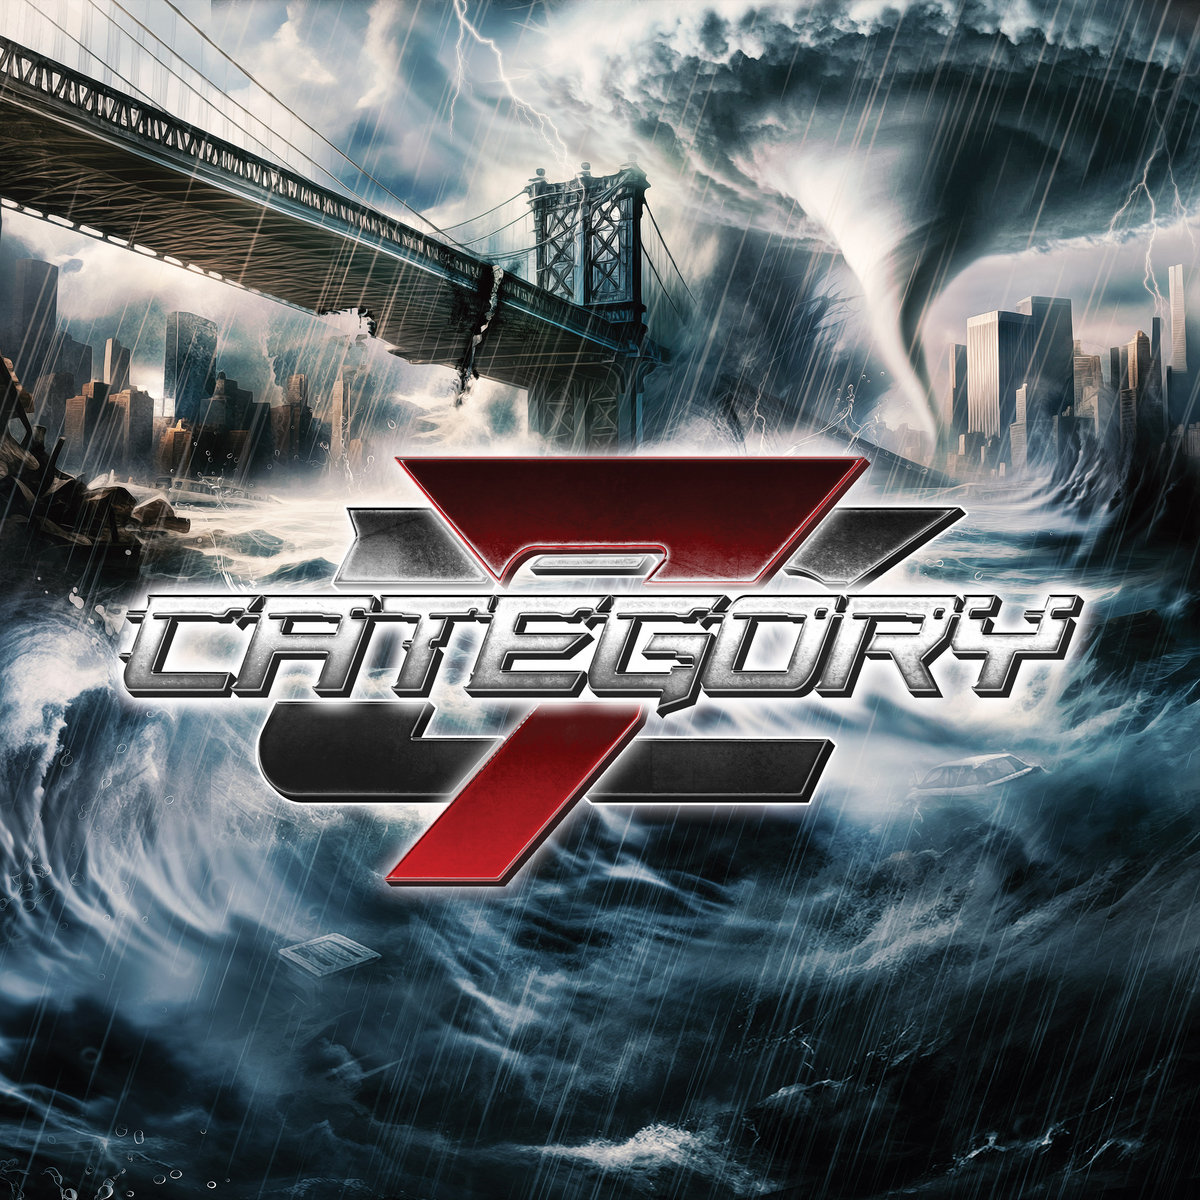 CATEGORY 7 - Category 7